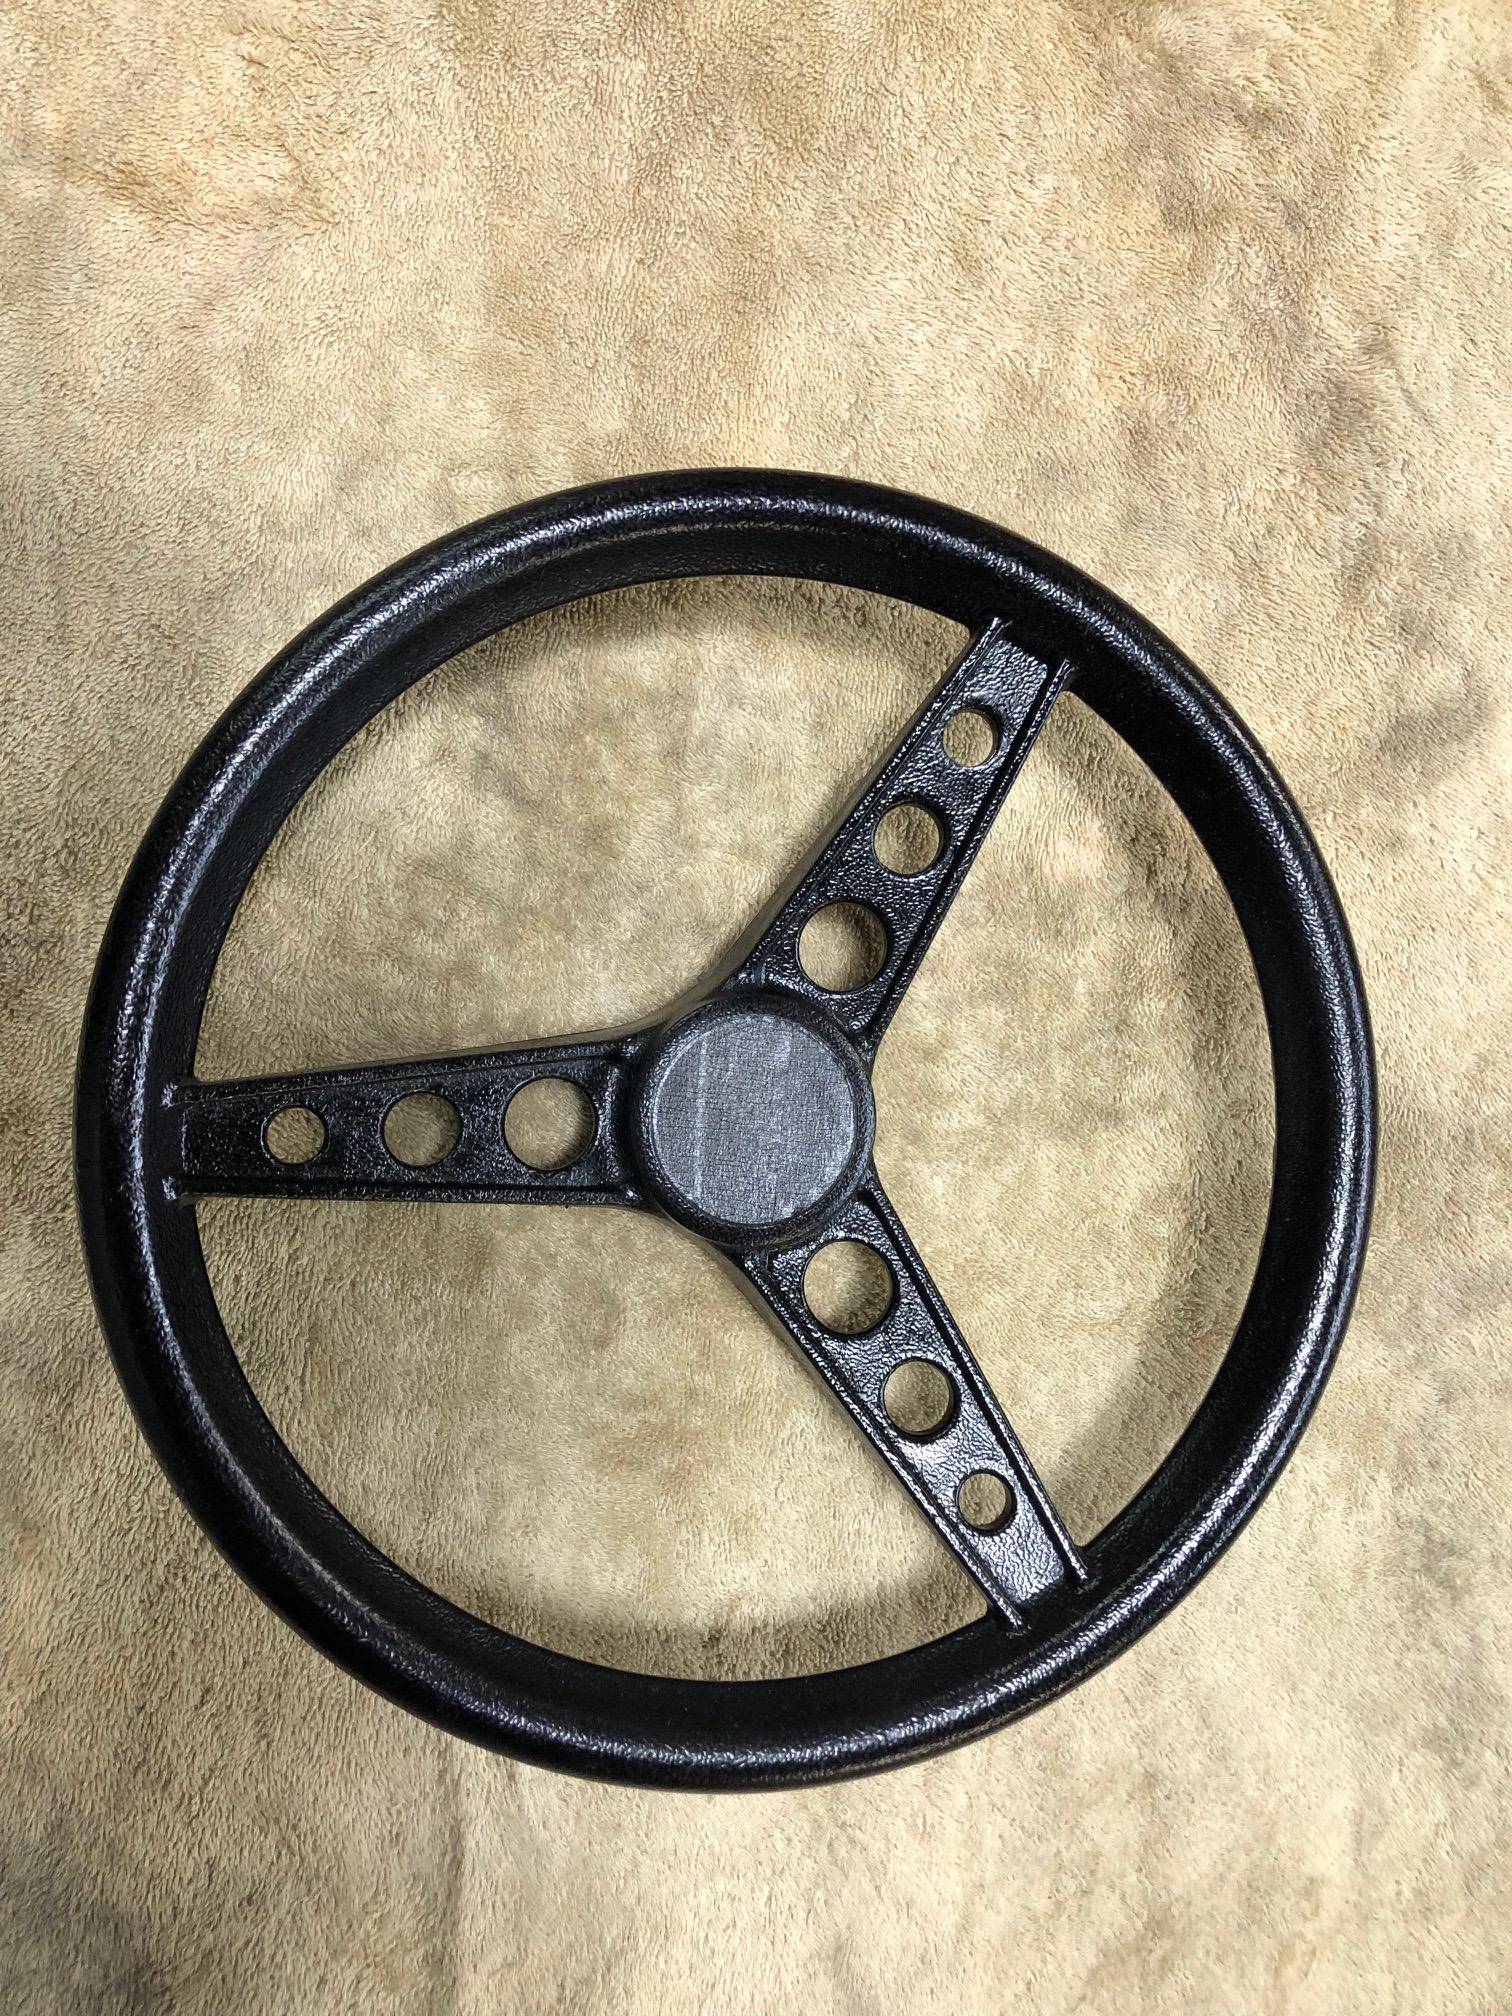 Painted Steering Wheel 1.jpg